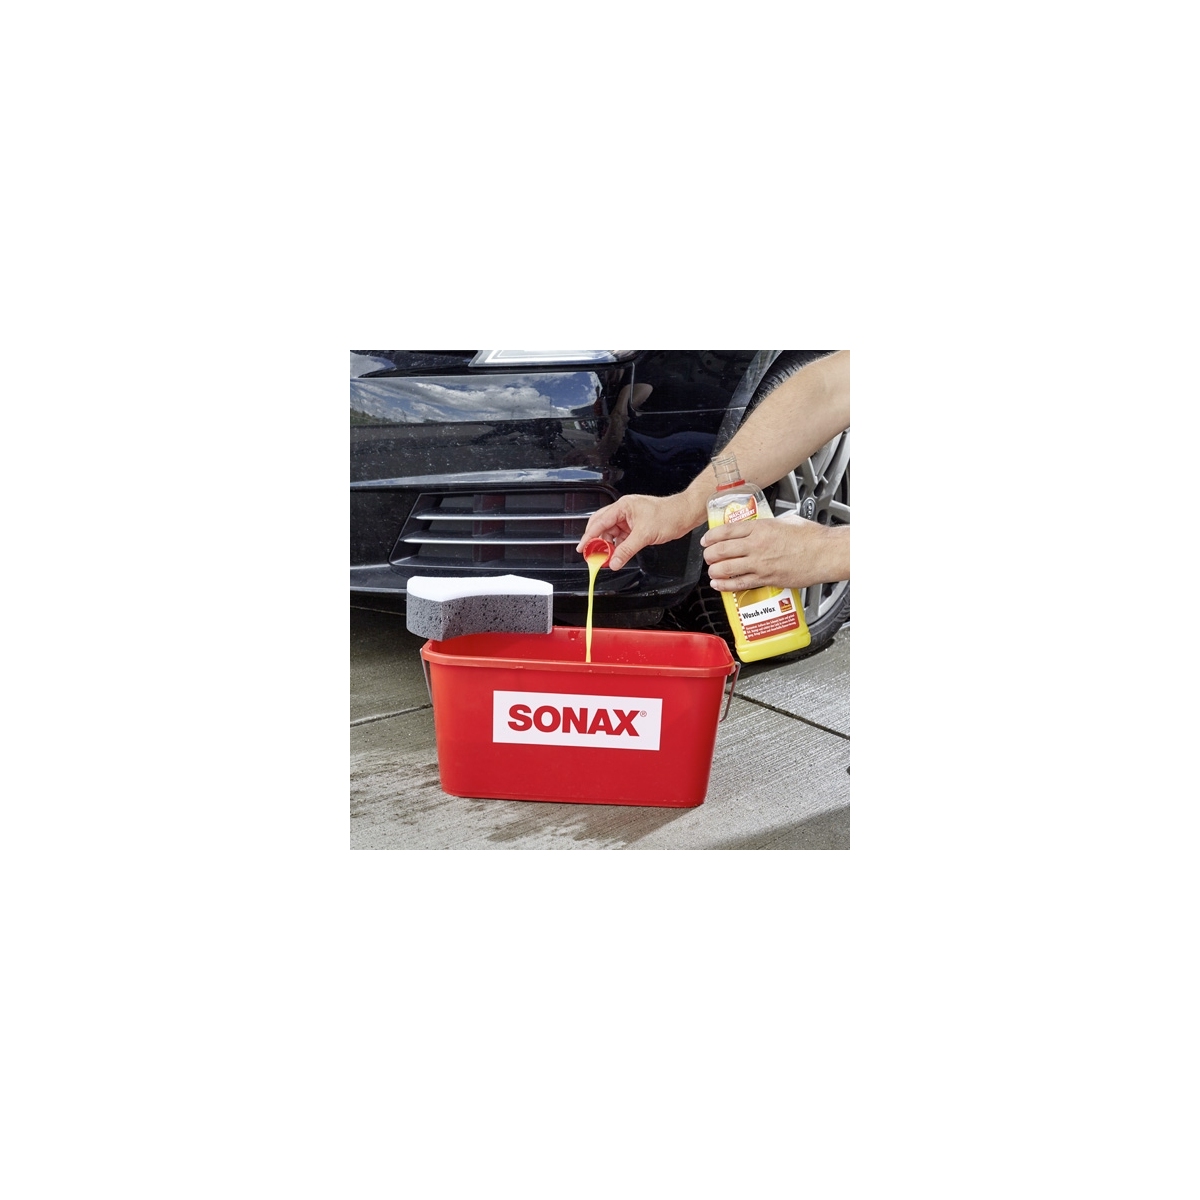 SONAX 03133410 Wasch + Wax 1L